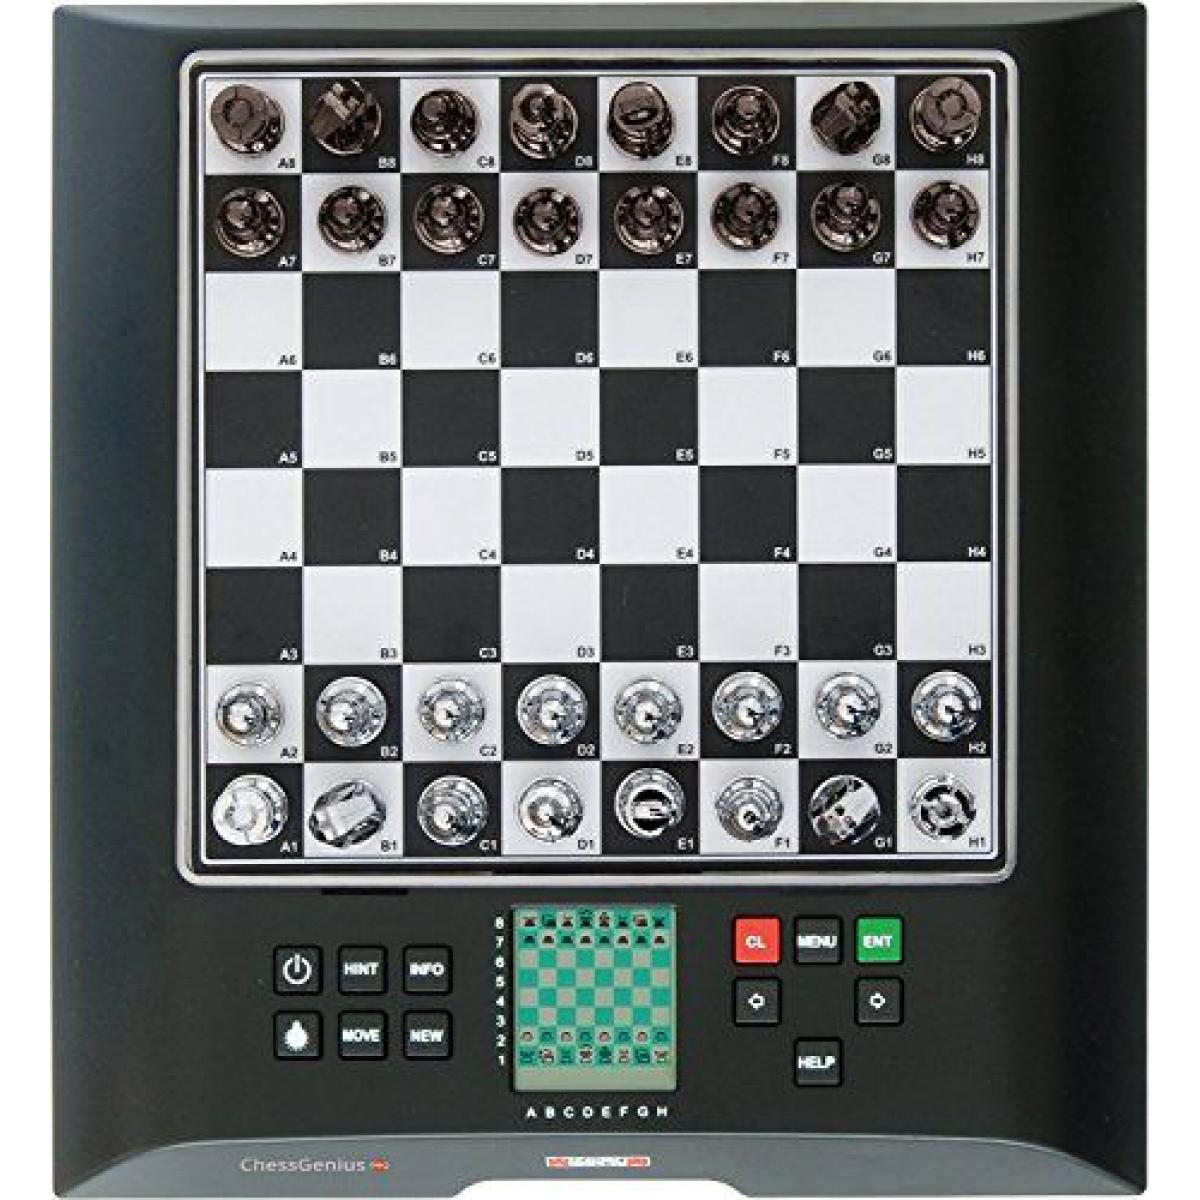 Millennium ChessGenius Ordinateur déchecs Professionnel